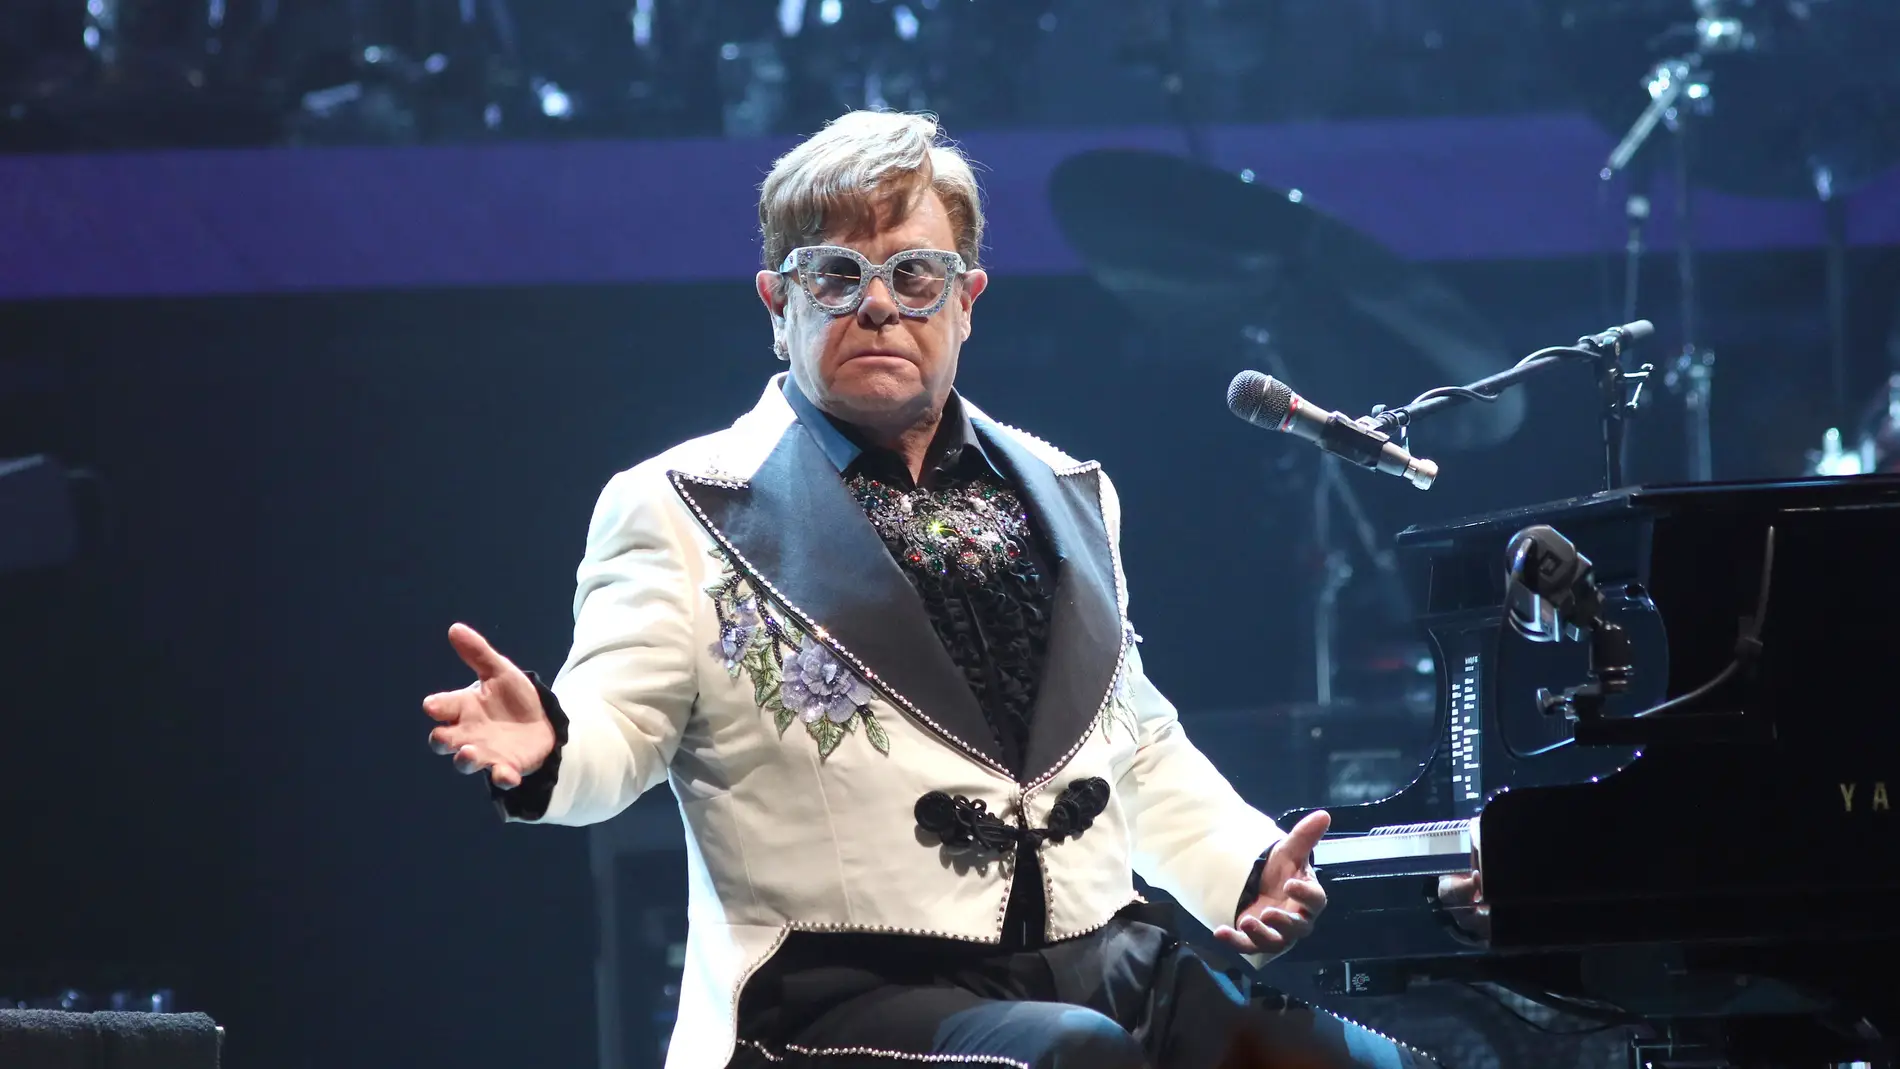 Elton John ha hecho saltar todas las alarmas al reaparecer sentado en silla de ruedas después de un show en Alemania. No obstante, se desconoce si se trata de un problema de salud que afecta a la movilidad o si tan sólo es una lesión pasajera